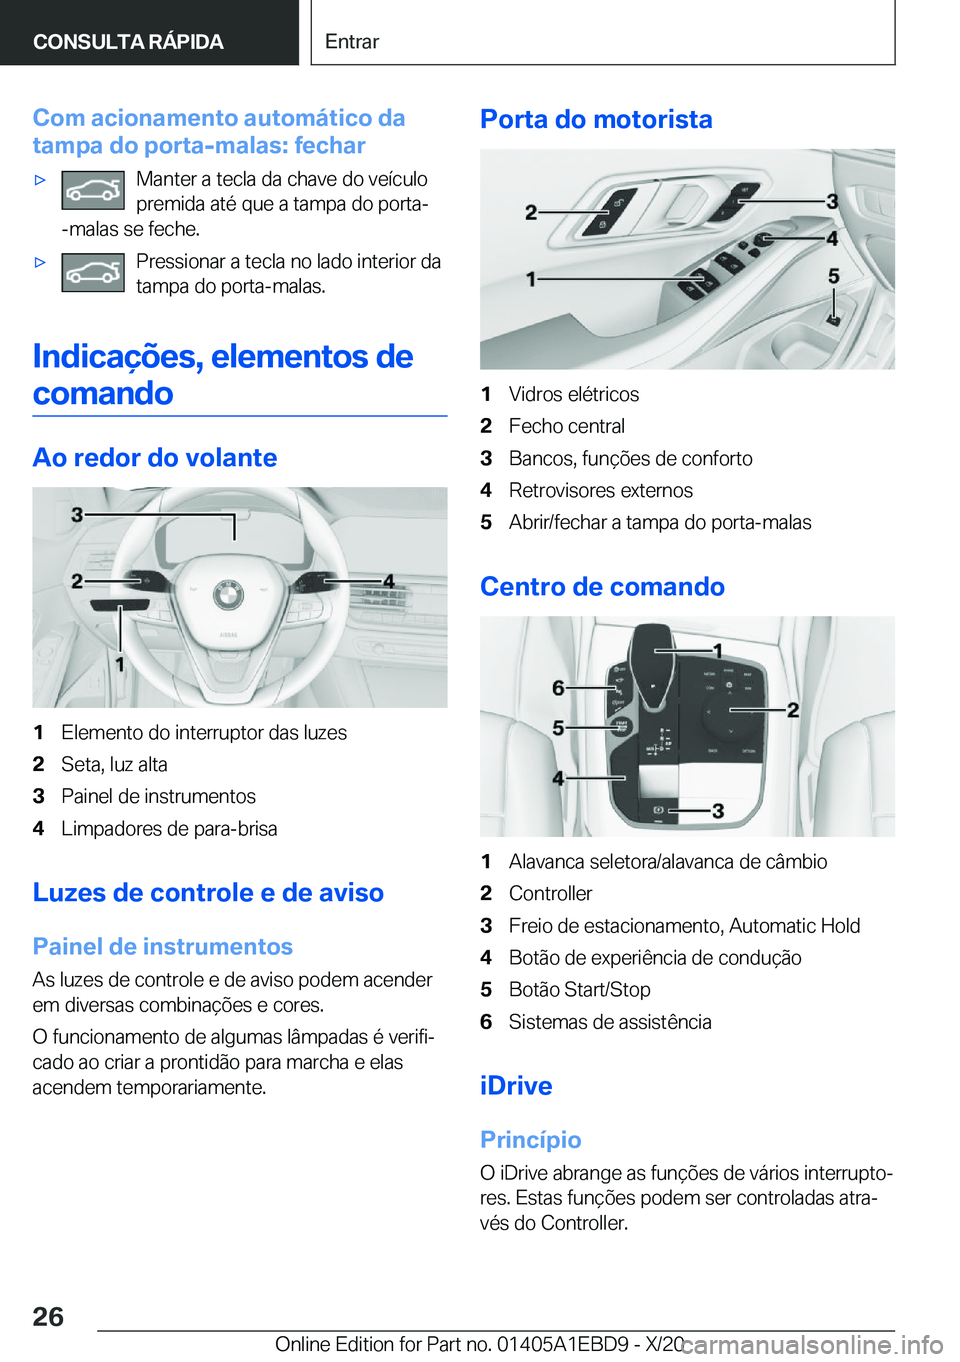 BMW 3 SERIES 2021  Manual do condutor (in Portuguese) �C�o�m��a�c�i�o�n�a�m�e�n�t�o��a�u�t�o�m�á�t�i�c�o��d�a
�t�a�m�p�a��d�o��p�o�r�t�a�-�m�a�l�a�s�:��f�e�c�h�a�rx�M�a�n�t�e�r��a��t�e�c�l�a��d�a��c�h�a�v�e��d�o��v�e�